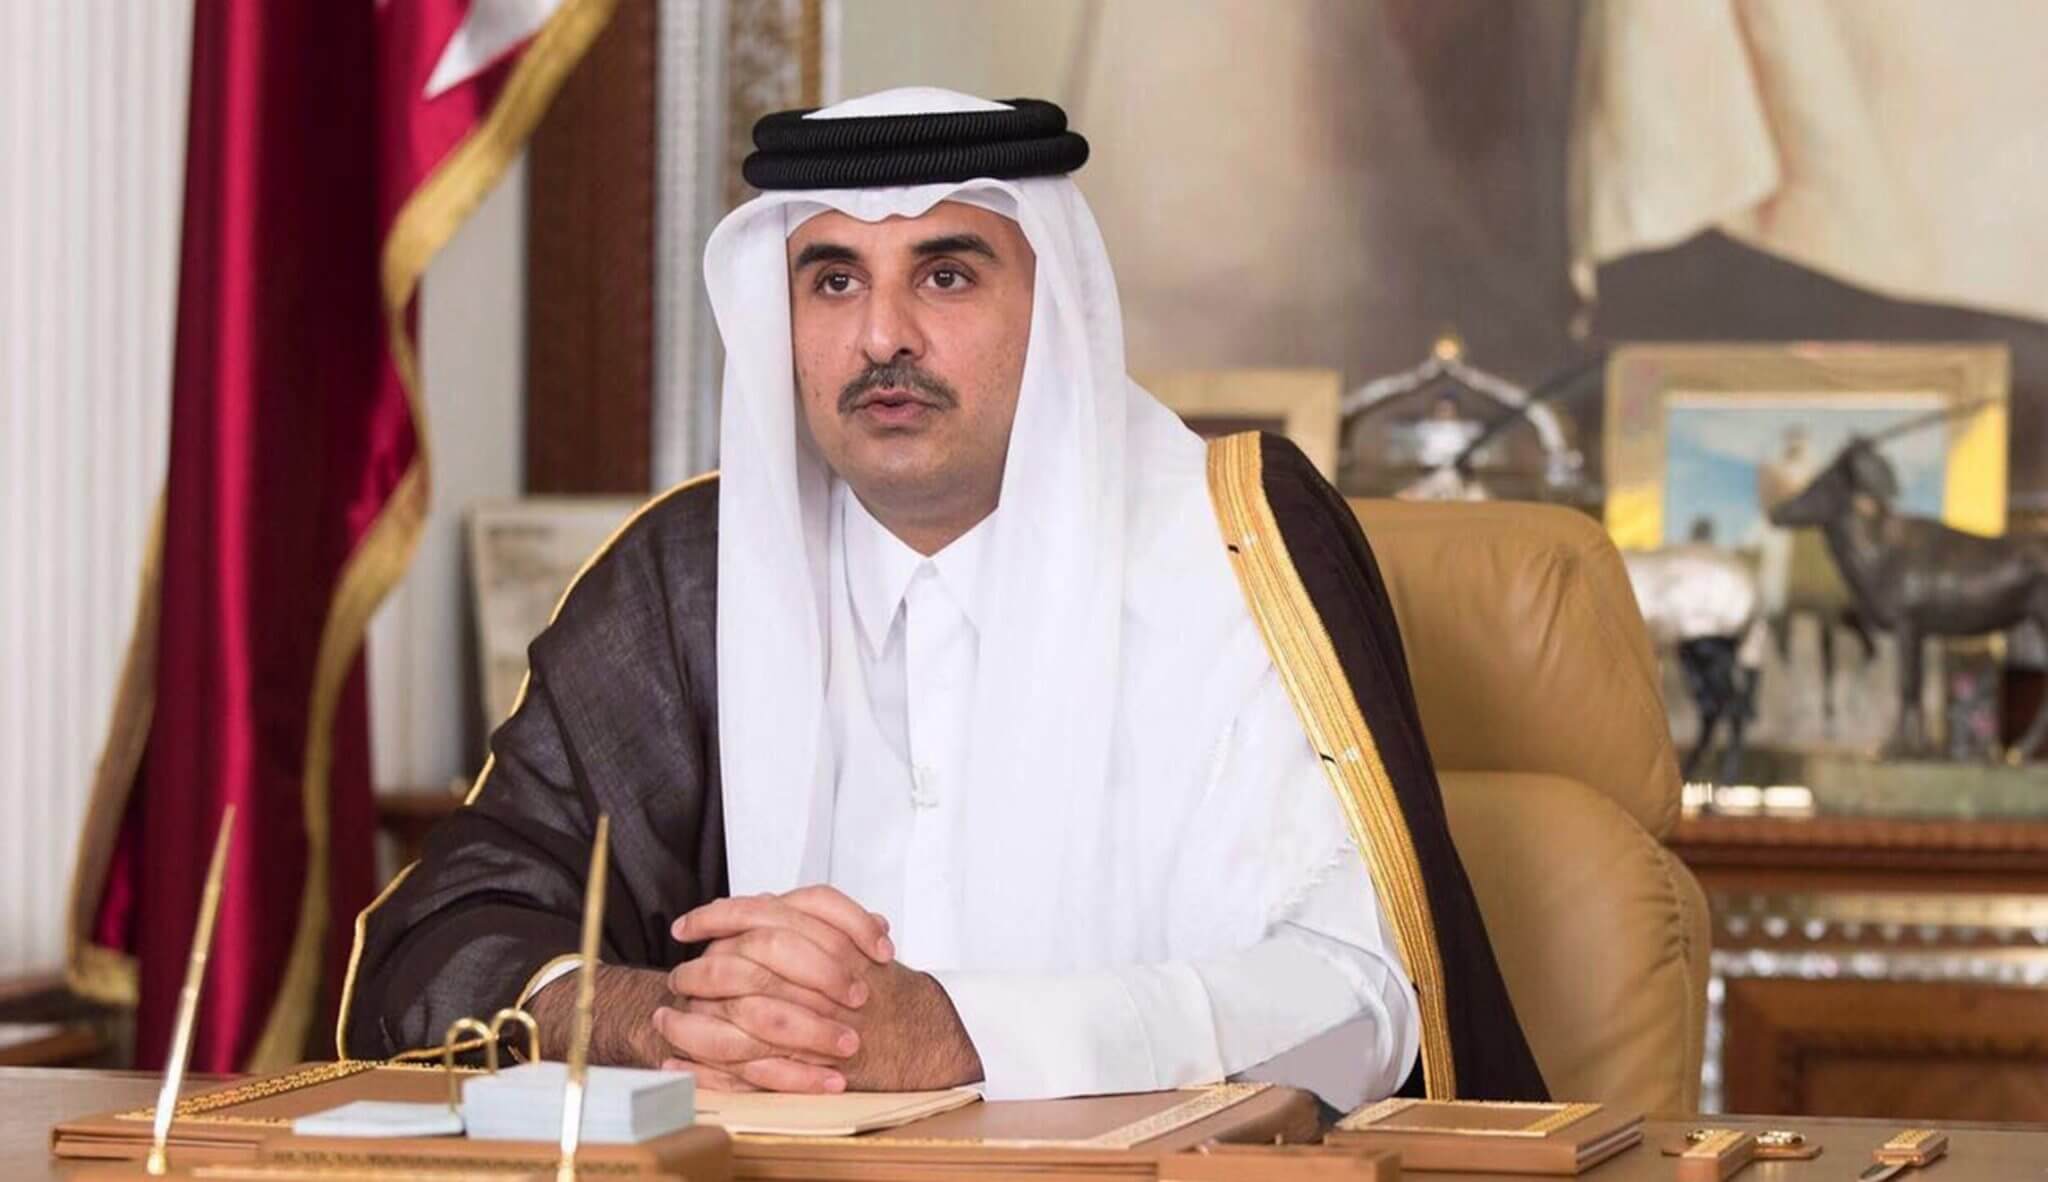 قطر اپنے خلاف گلف ریاستوں کی پابندیوں کے خاتمے کے بدلے میں اسرائیل سے تعلقات قائم کرنے پر راضی